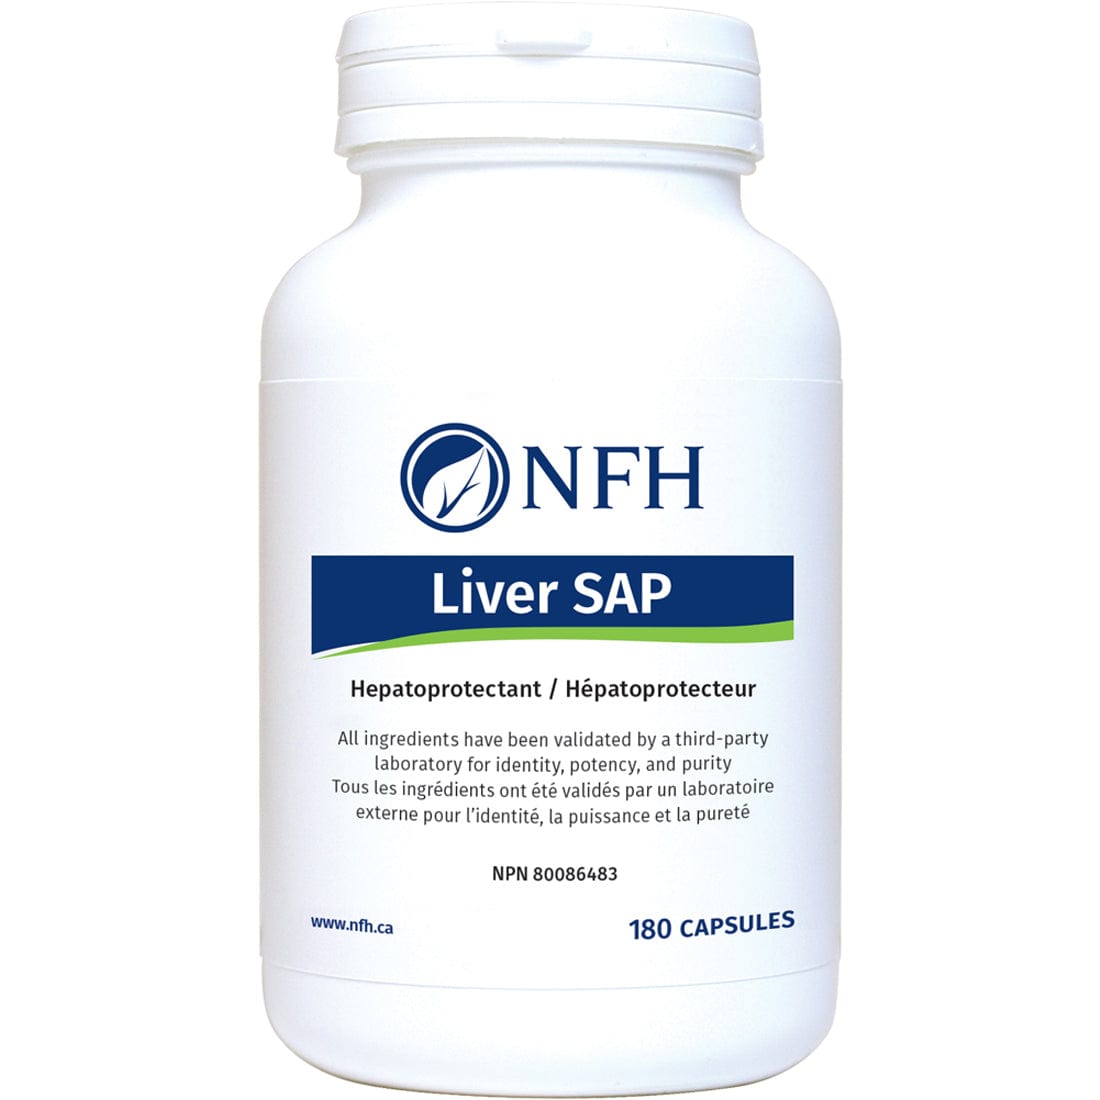 NFH Liver SAP